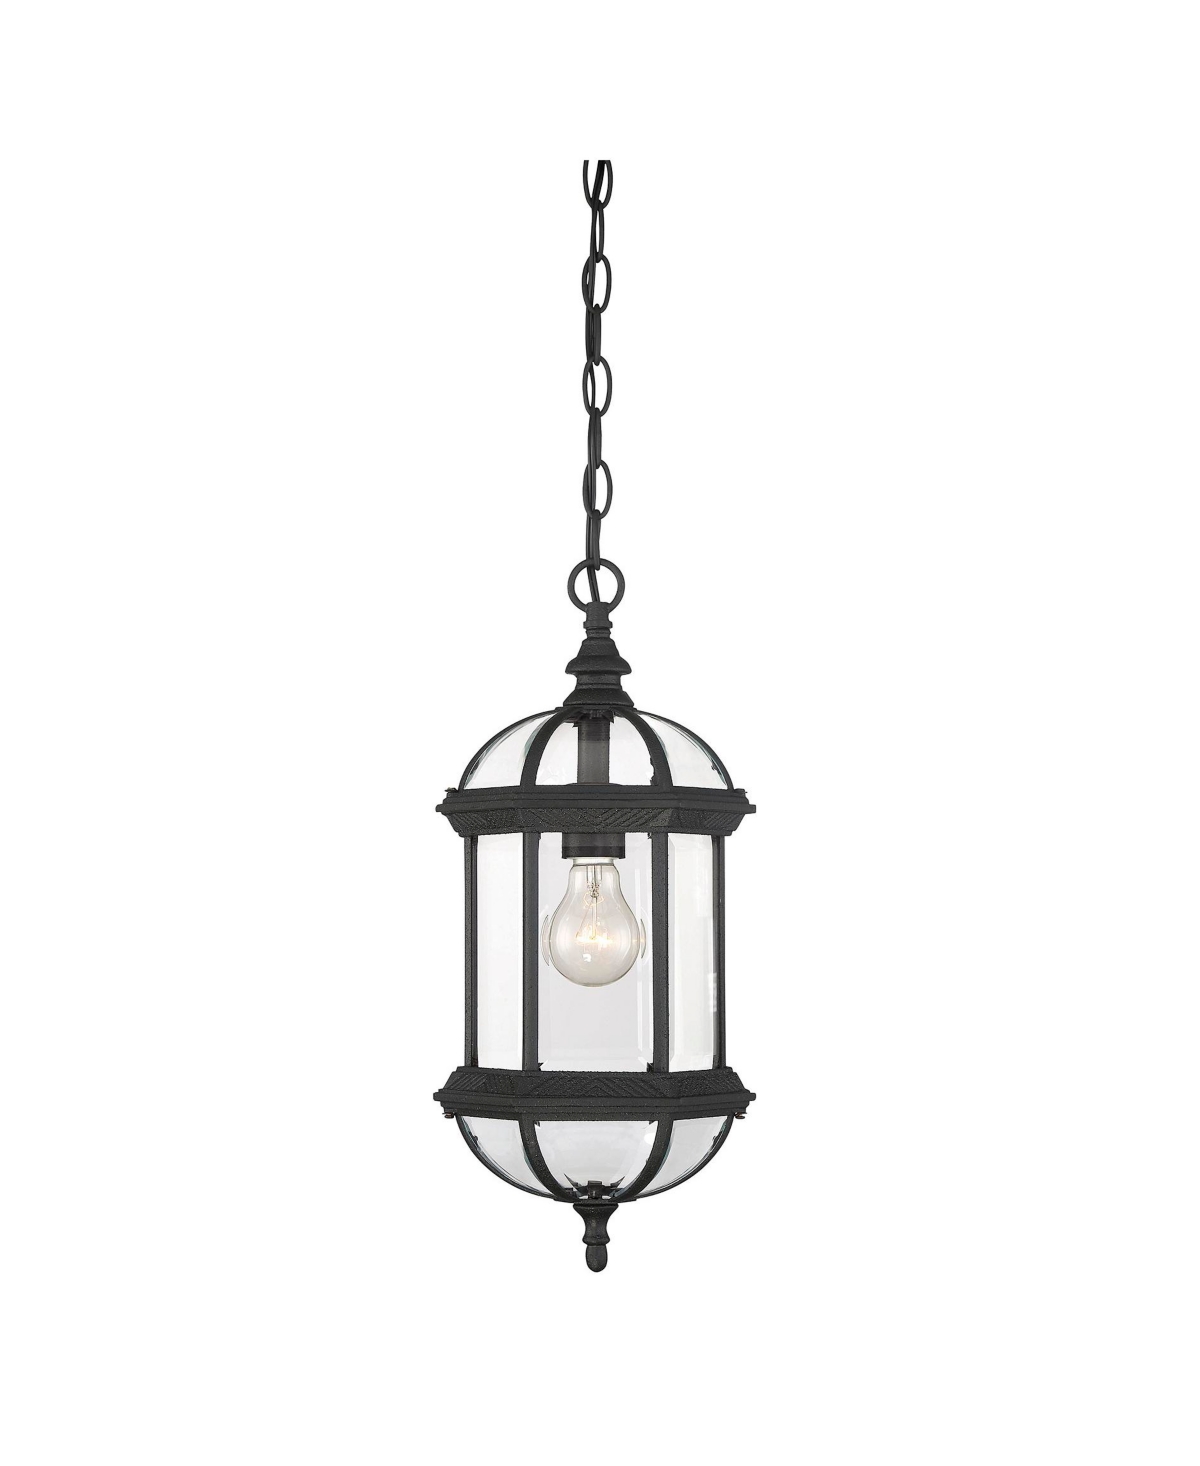 Kensington 18" Outdoor Hanging Lantern - Textured black